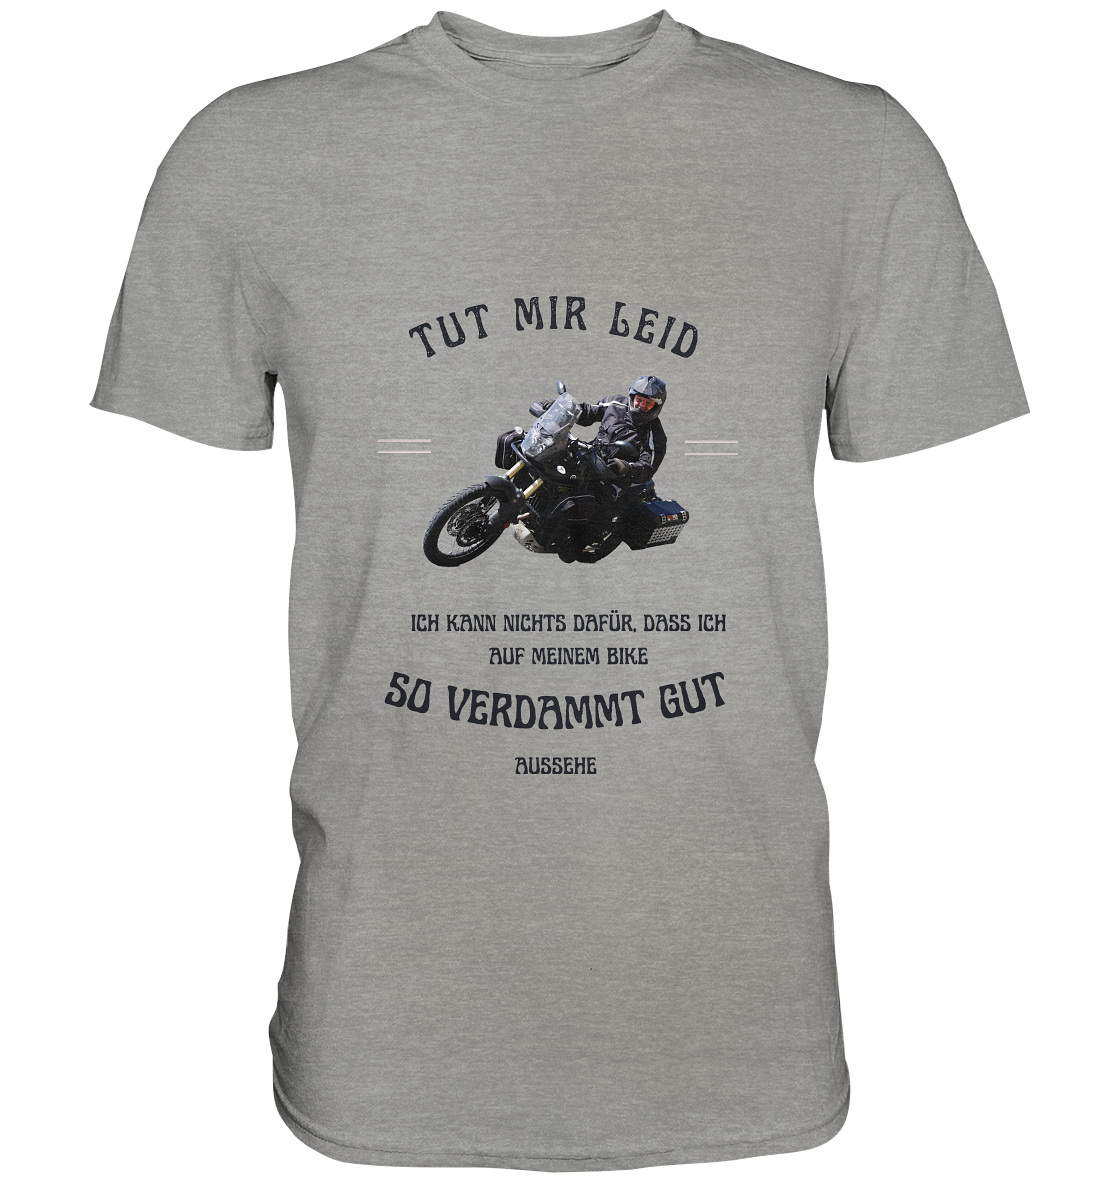 "Tut mir leid, ich kann nichts dafür, dass ich auf meinem Bike so verdammt gut aussehe" _ für Bernd | individualisiertes Shirt mit Foto-Druck + Motorradspruch in dunklem Design